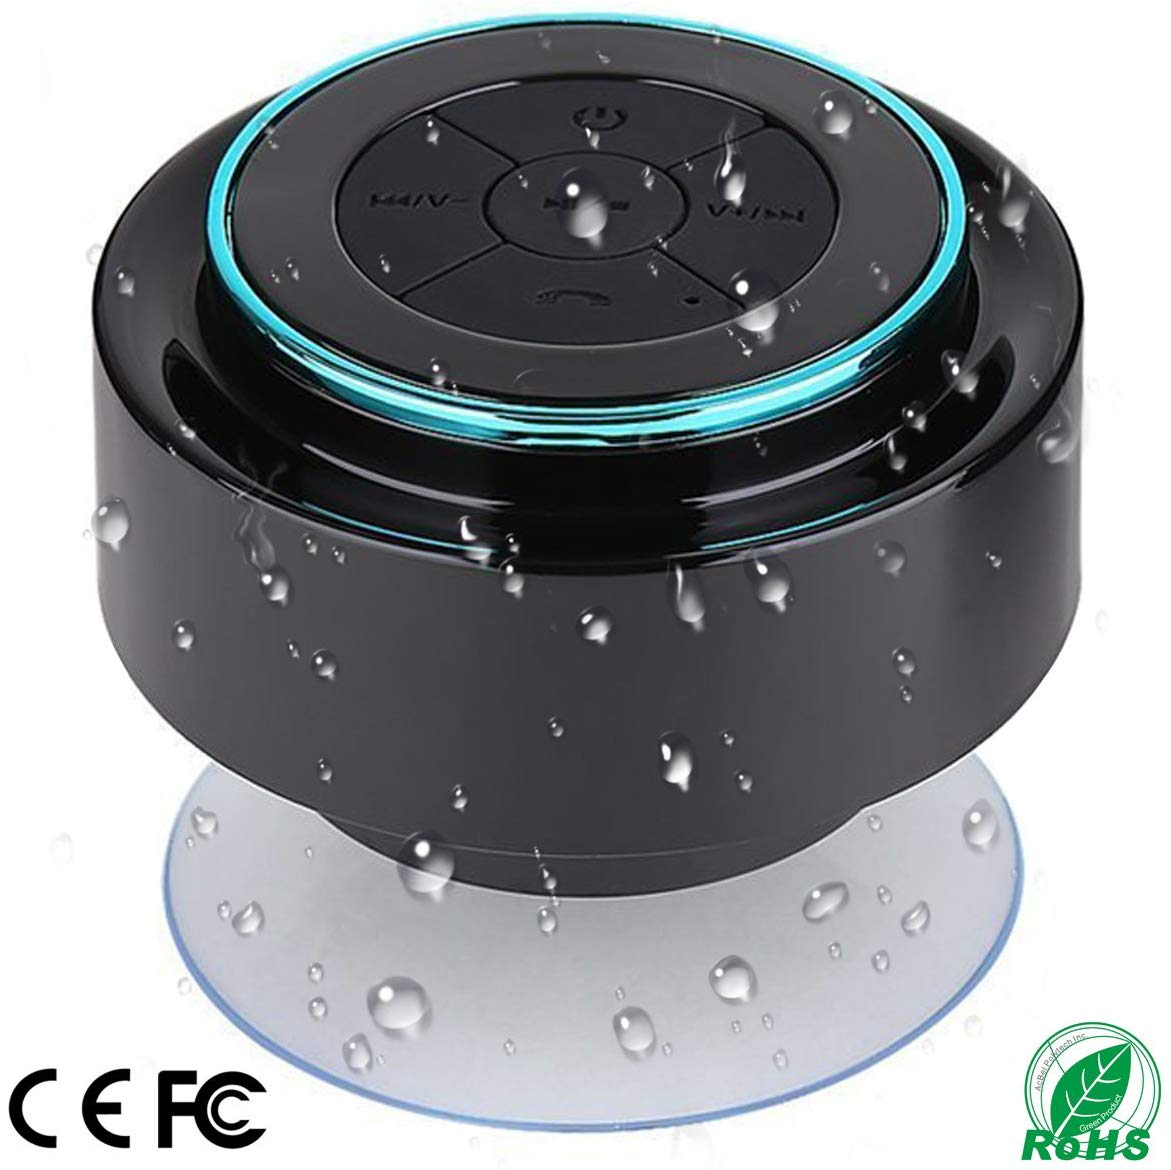 Win a Water Proof Wireless Speaker!